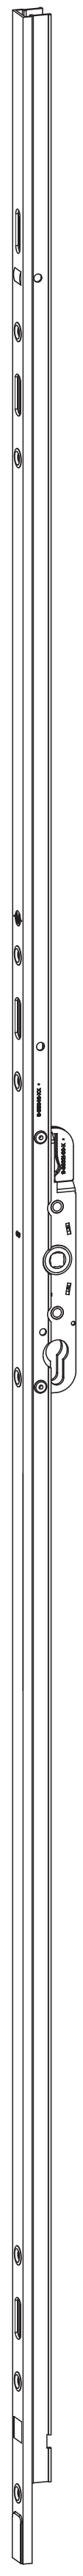 GU-ITALIA -  Cremonese HS 934 - 937 per alzante scorrevole altezza maniglia fissa con chiusura a perni - gr / dim. A PERNI DI CHIUSURA - entrata 27,5 - alt. man. 1000 - lbb/hbb 2090 - 2740